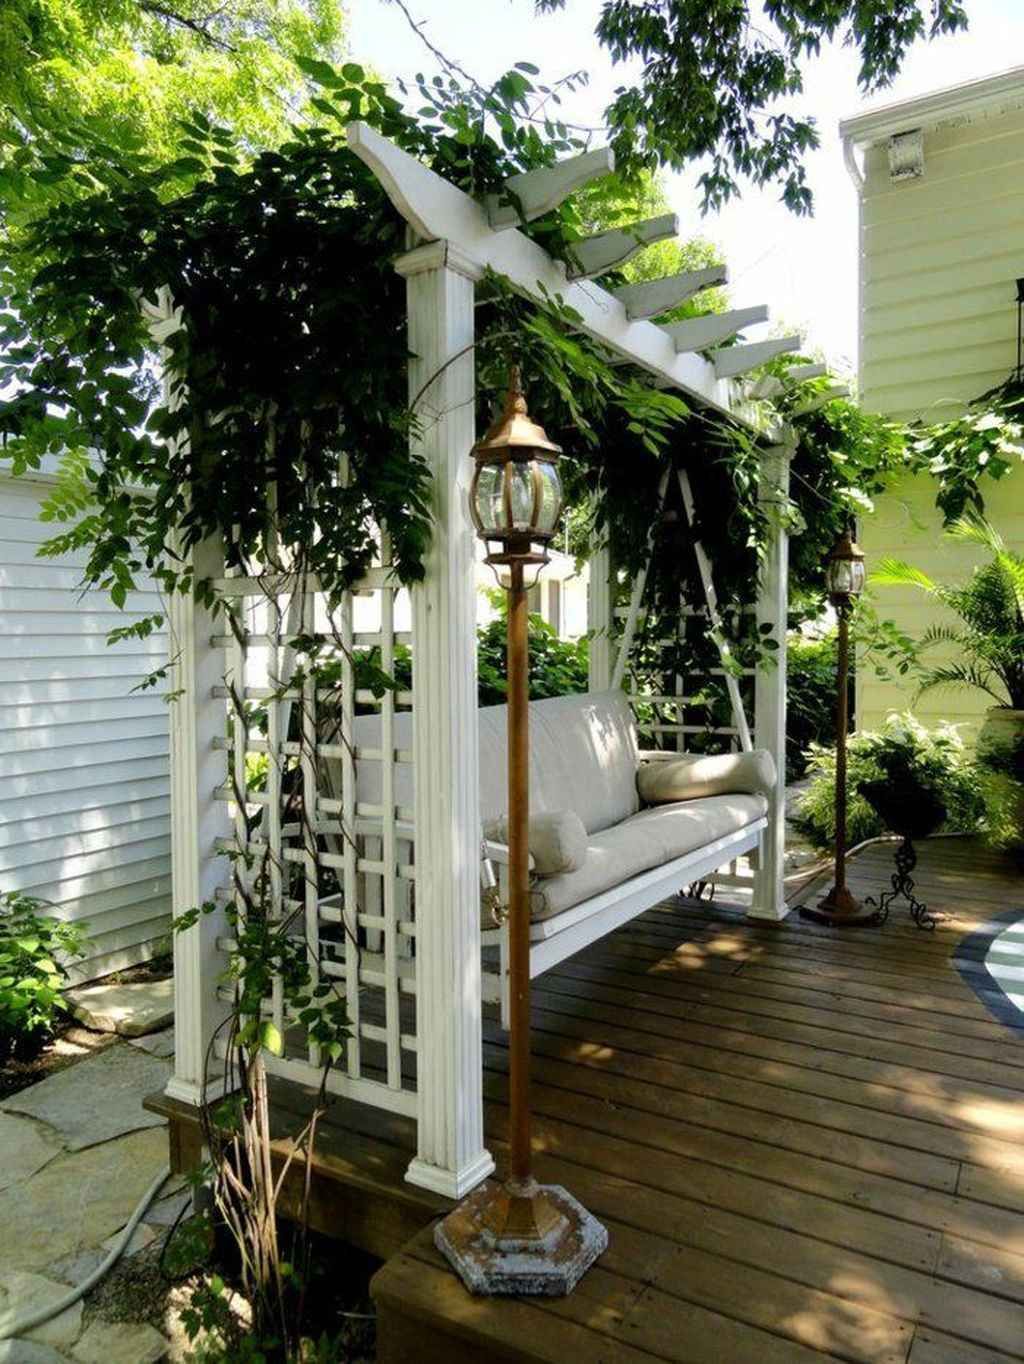 01 Great Garden Swing Seats for Backyard Ideas - frontbackhome